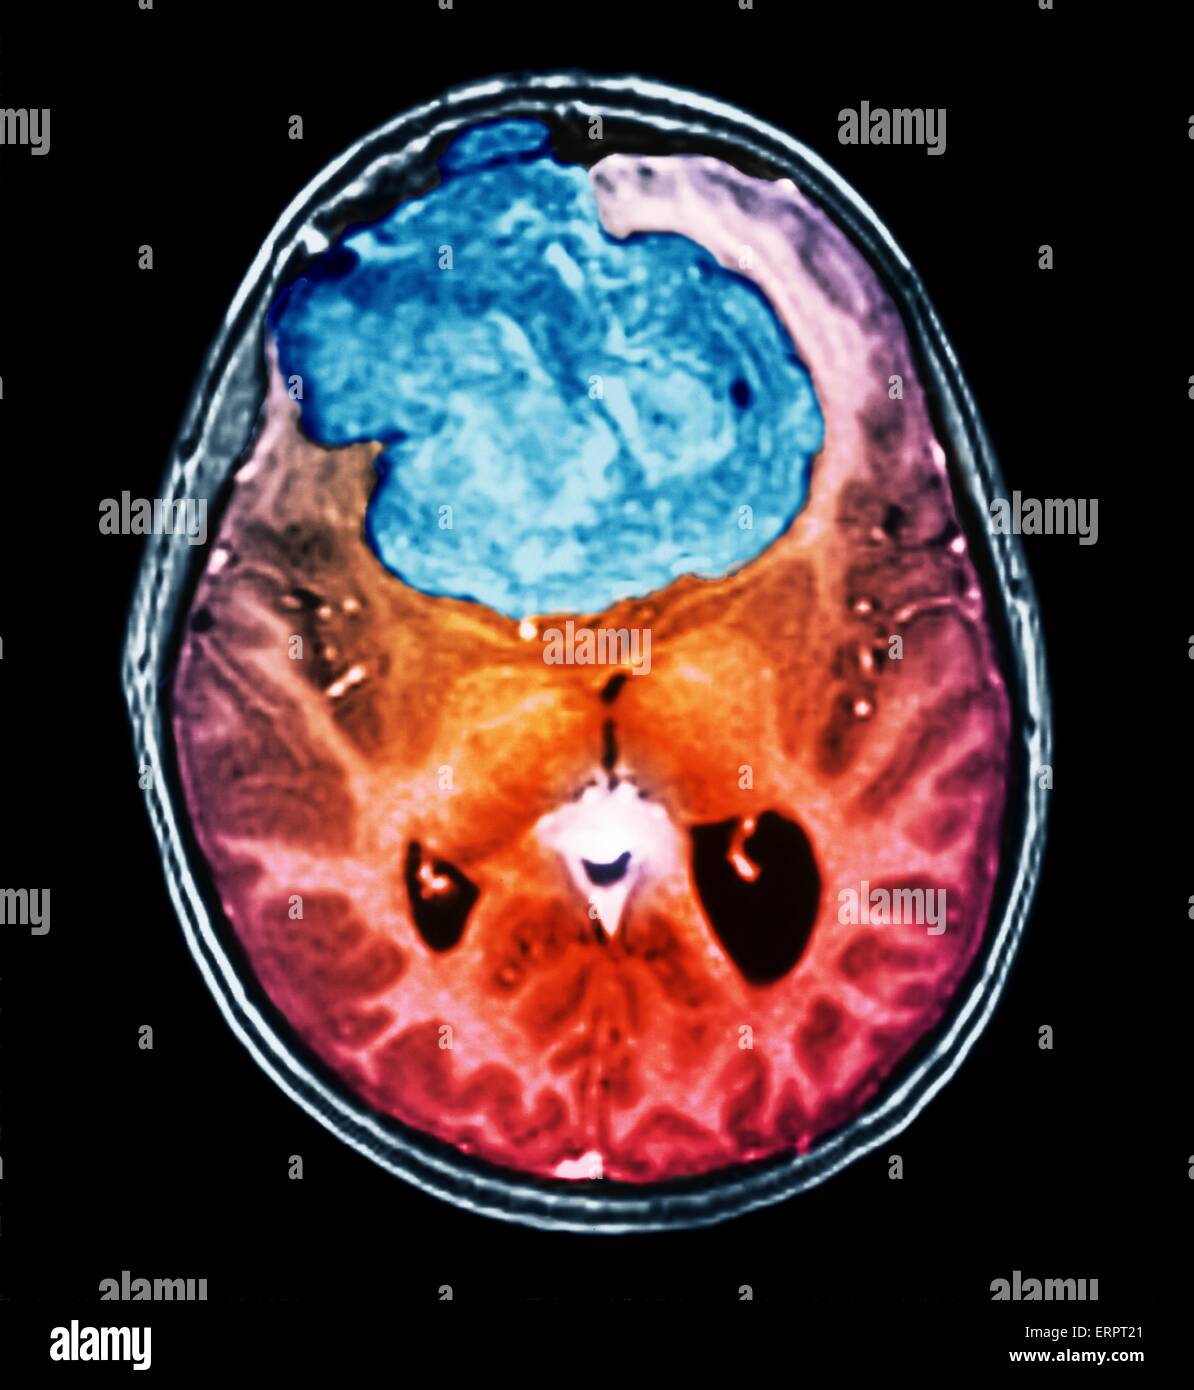 Benigna tumore al cervello. Colorato la tomografia computerizzata (CT) scansione del cervello di un 25 anno di età di un paziente con un meningioma (blu). Si tratta di un benigno (non cancerosi) il tumore che nasce dalla meningi, le membrane che circondano il cervello. È stato causato da radi Foto Stock